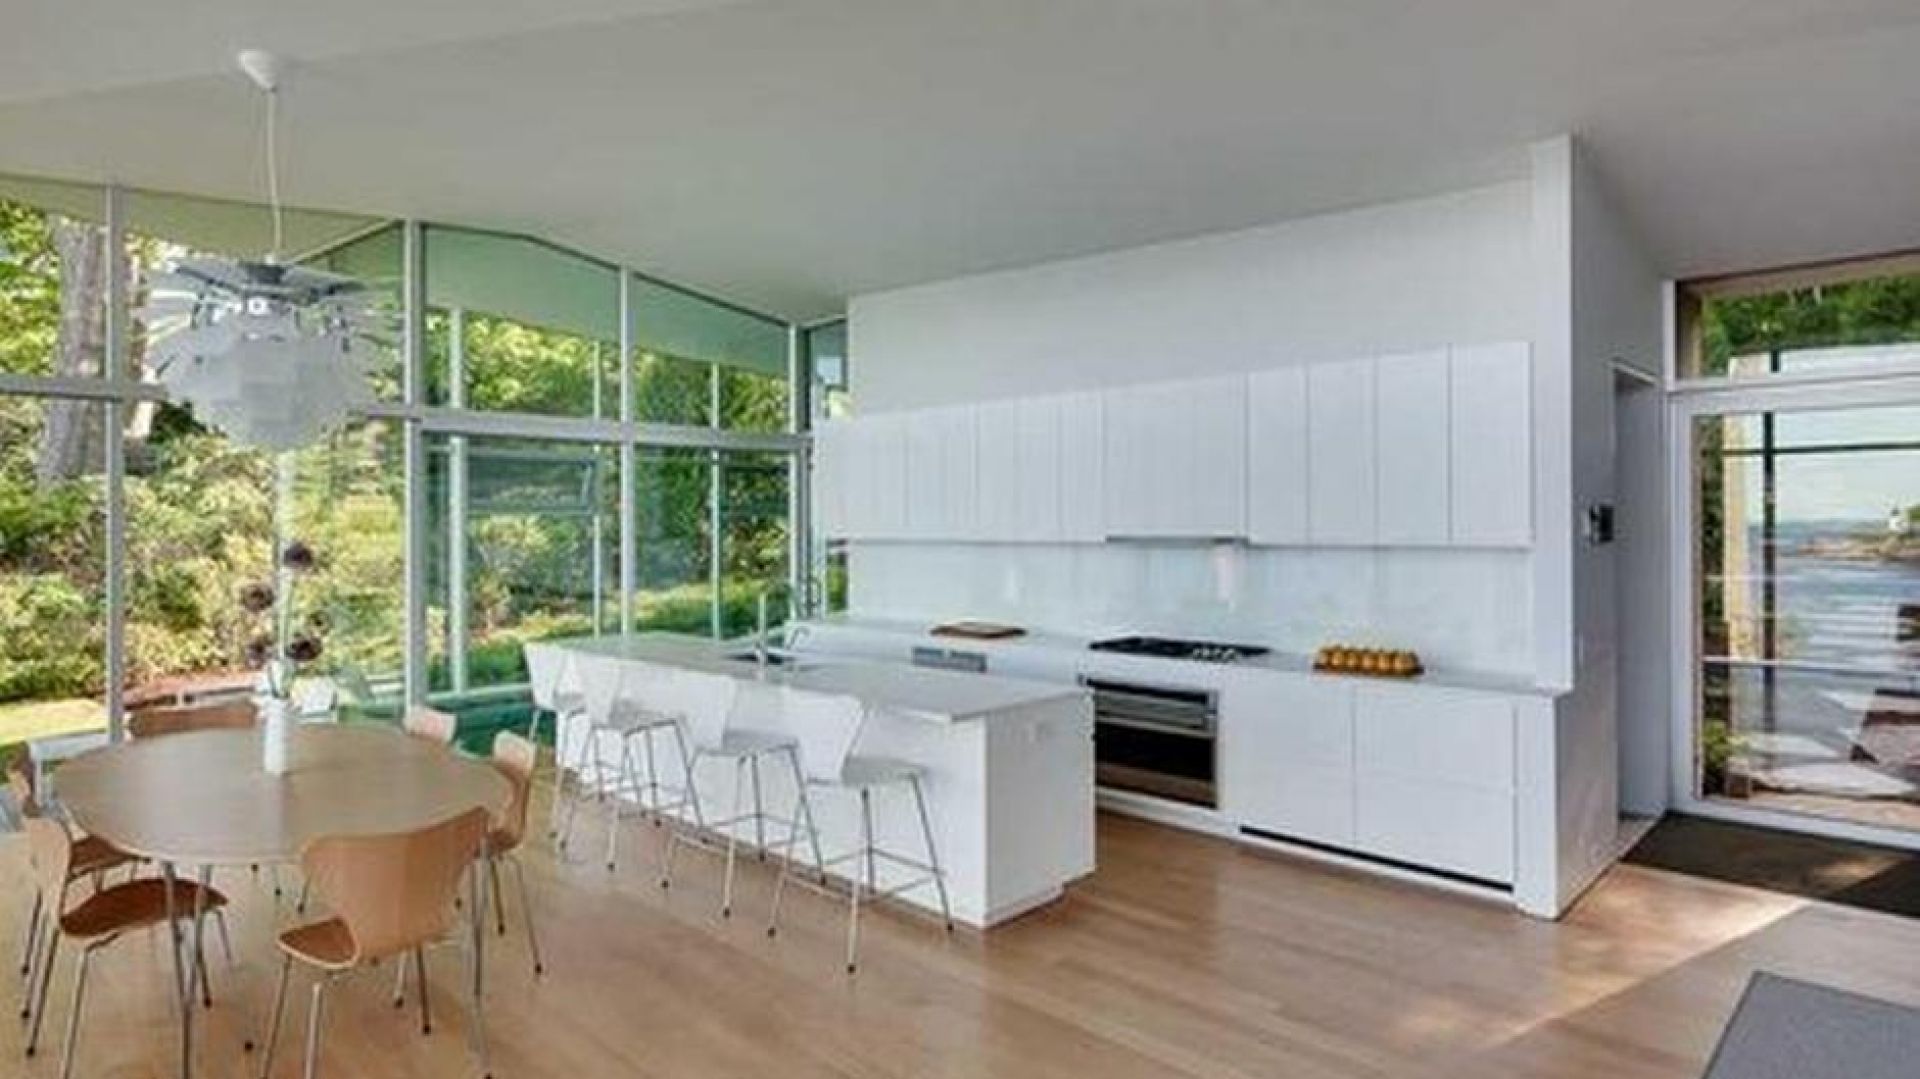 Dom urządzony w nowoczesnym, minimalistycznym stylu